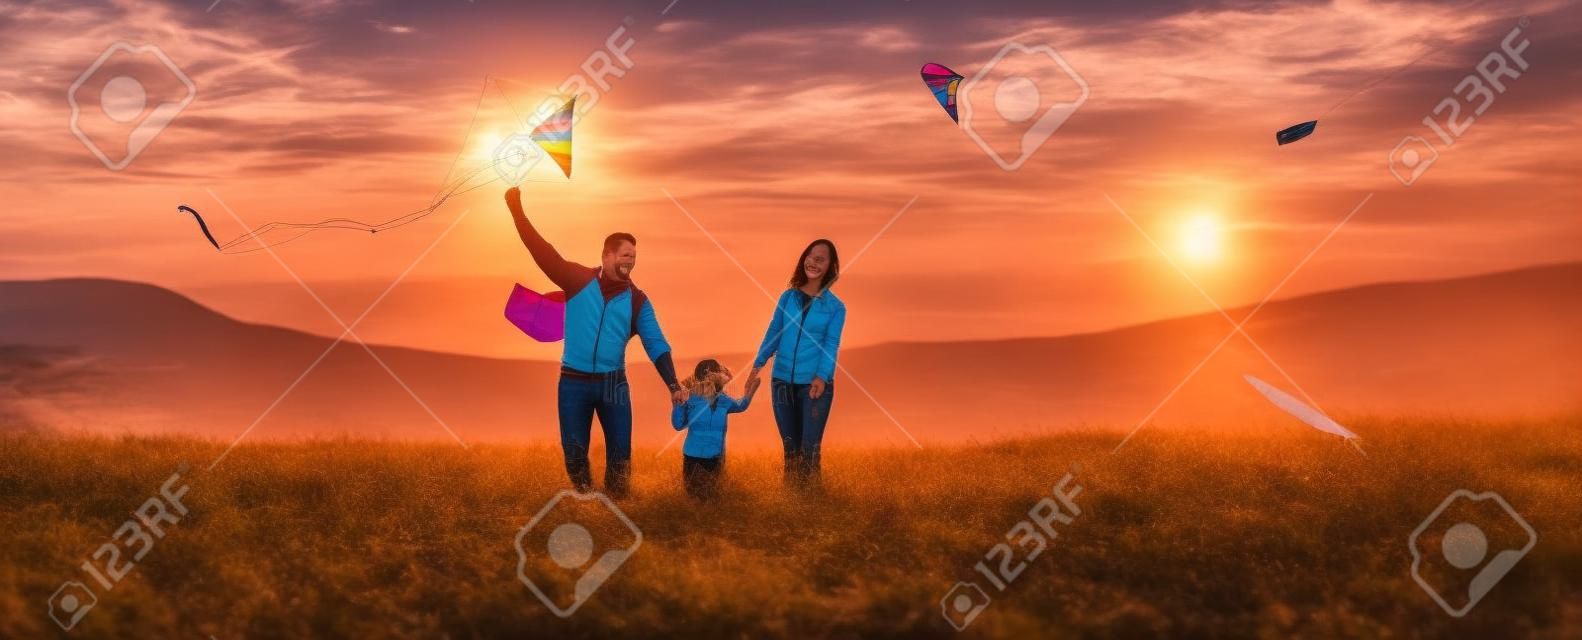 행복한 가족 아버지, 어머니와 자식 딸 일몰 자연에 연을 시작